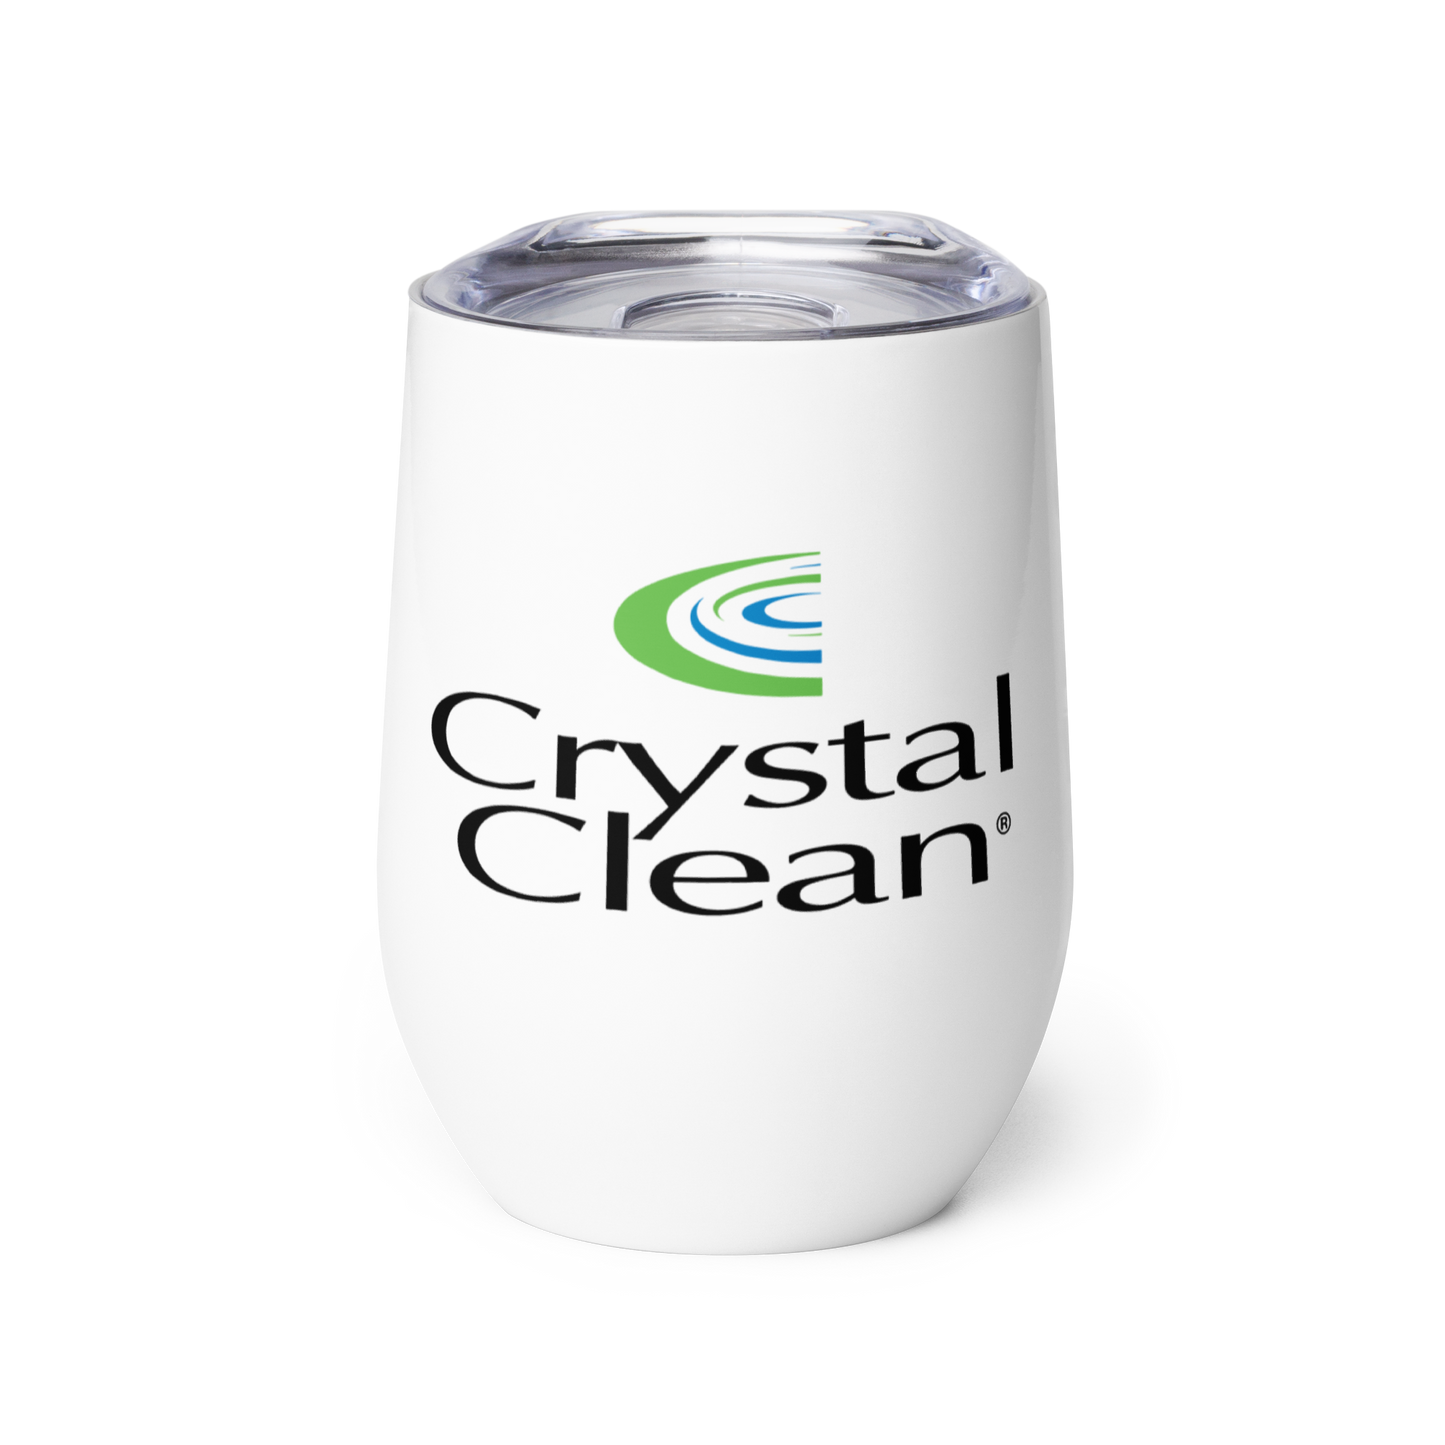 Crystal Clean Wine tumbler